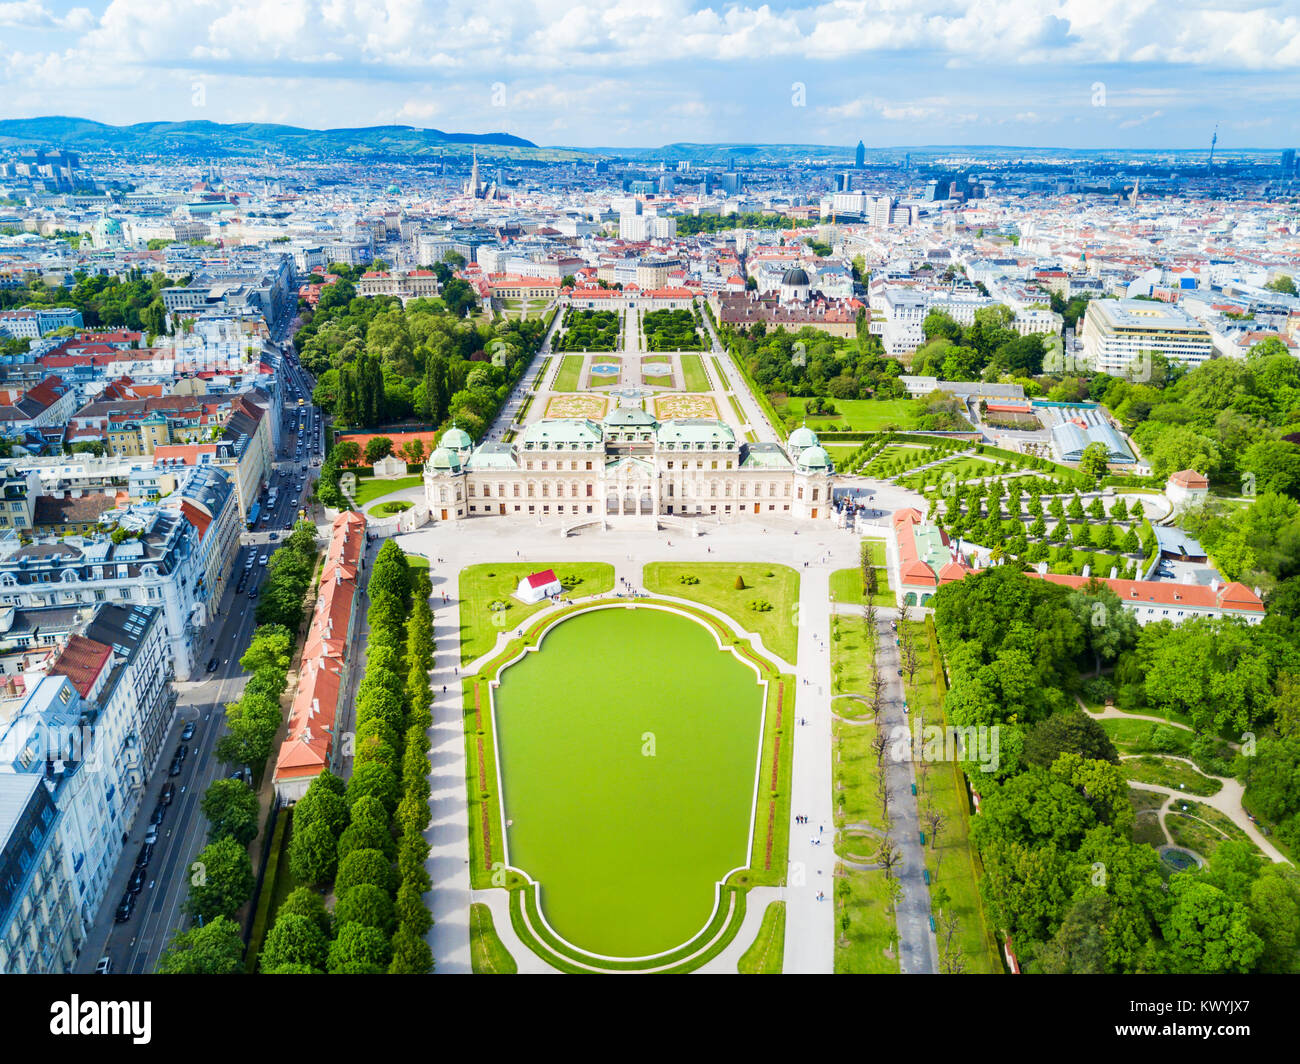 Vista panorámica aérea del Palacio de Belvedere. El Palacio Belvedere es un complejo de edificios históricos en Viena, Austria. Belvedere fue construido como residencia de verano Foto de stock